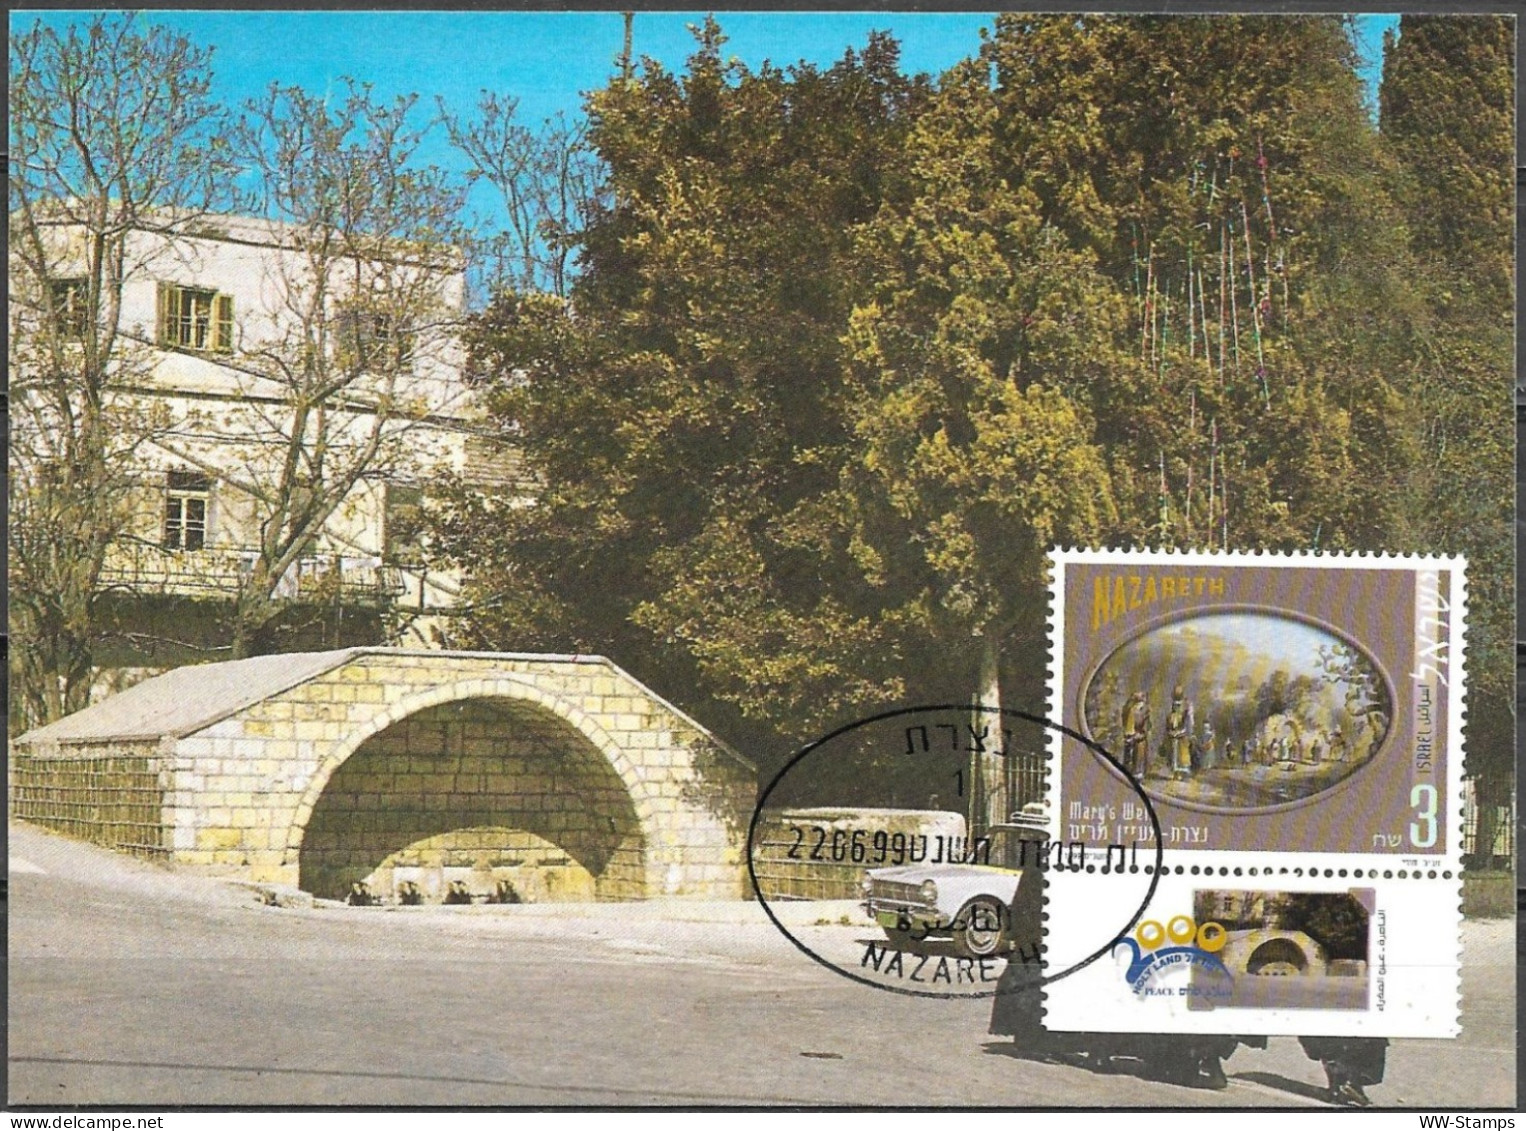 Israel 1999 Maximum Card Nazareth Mary's Well Pilgrimage To The Holy Land [ILT1646] - Maximum Cards